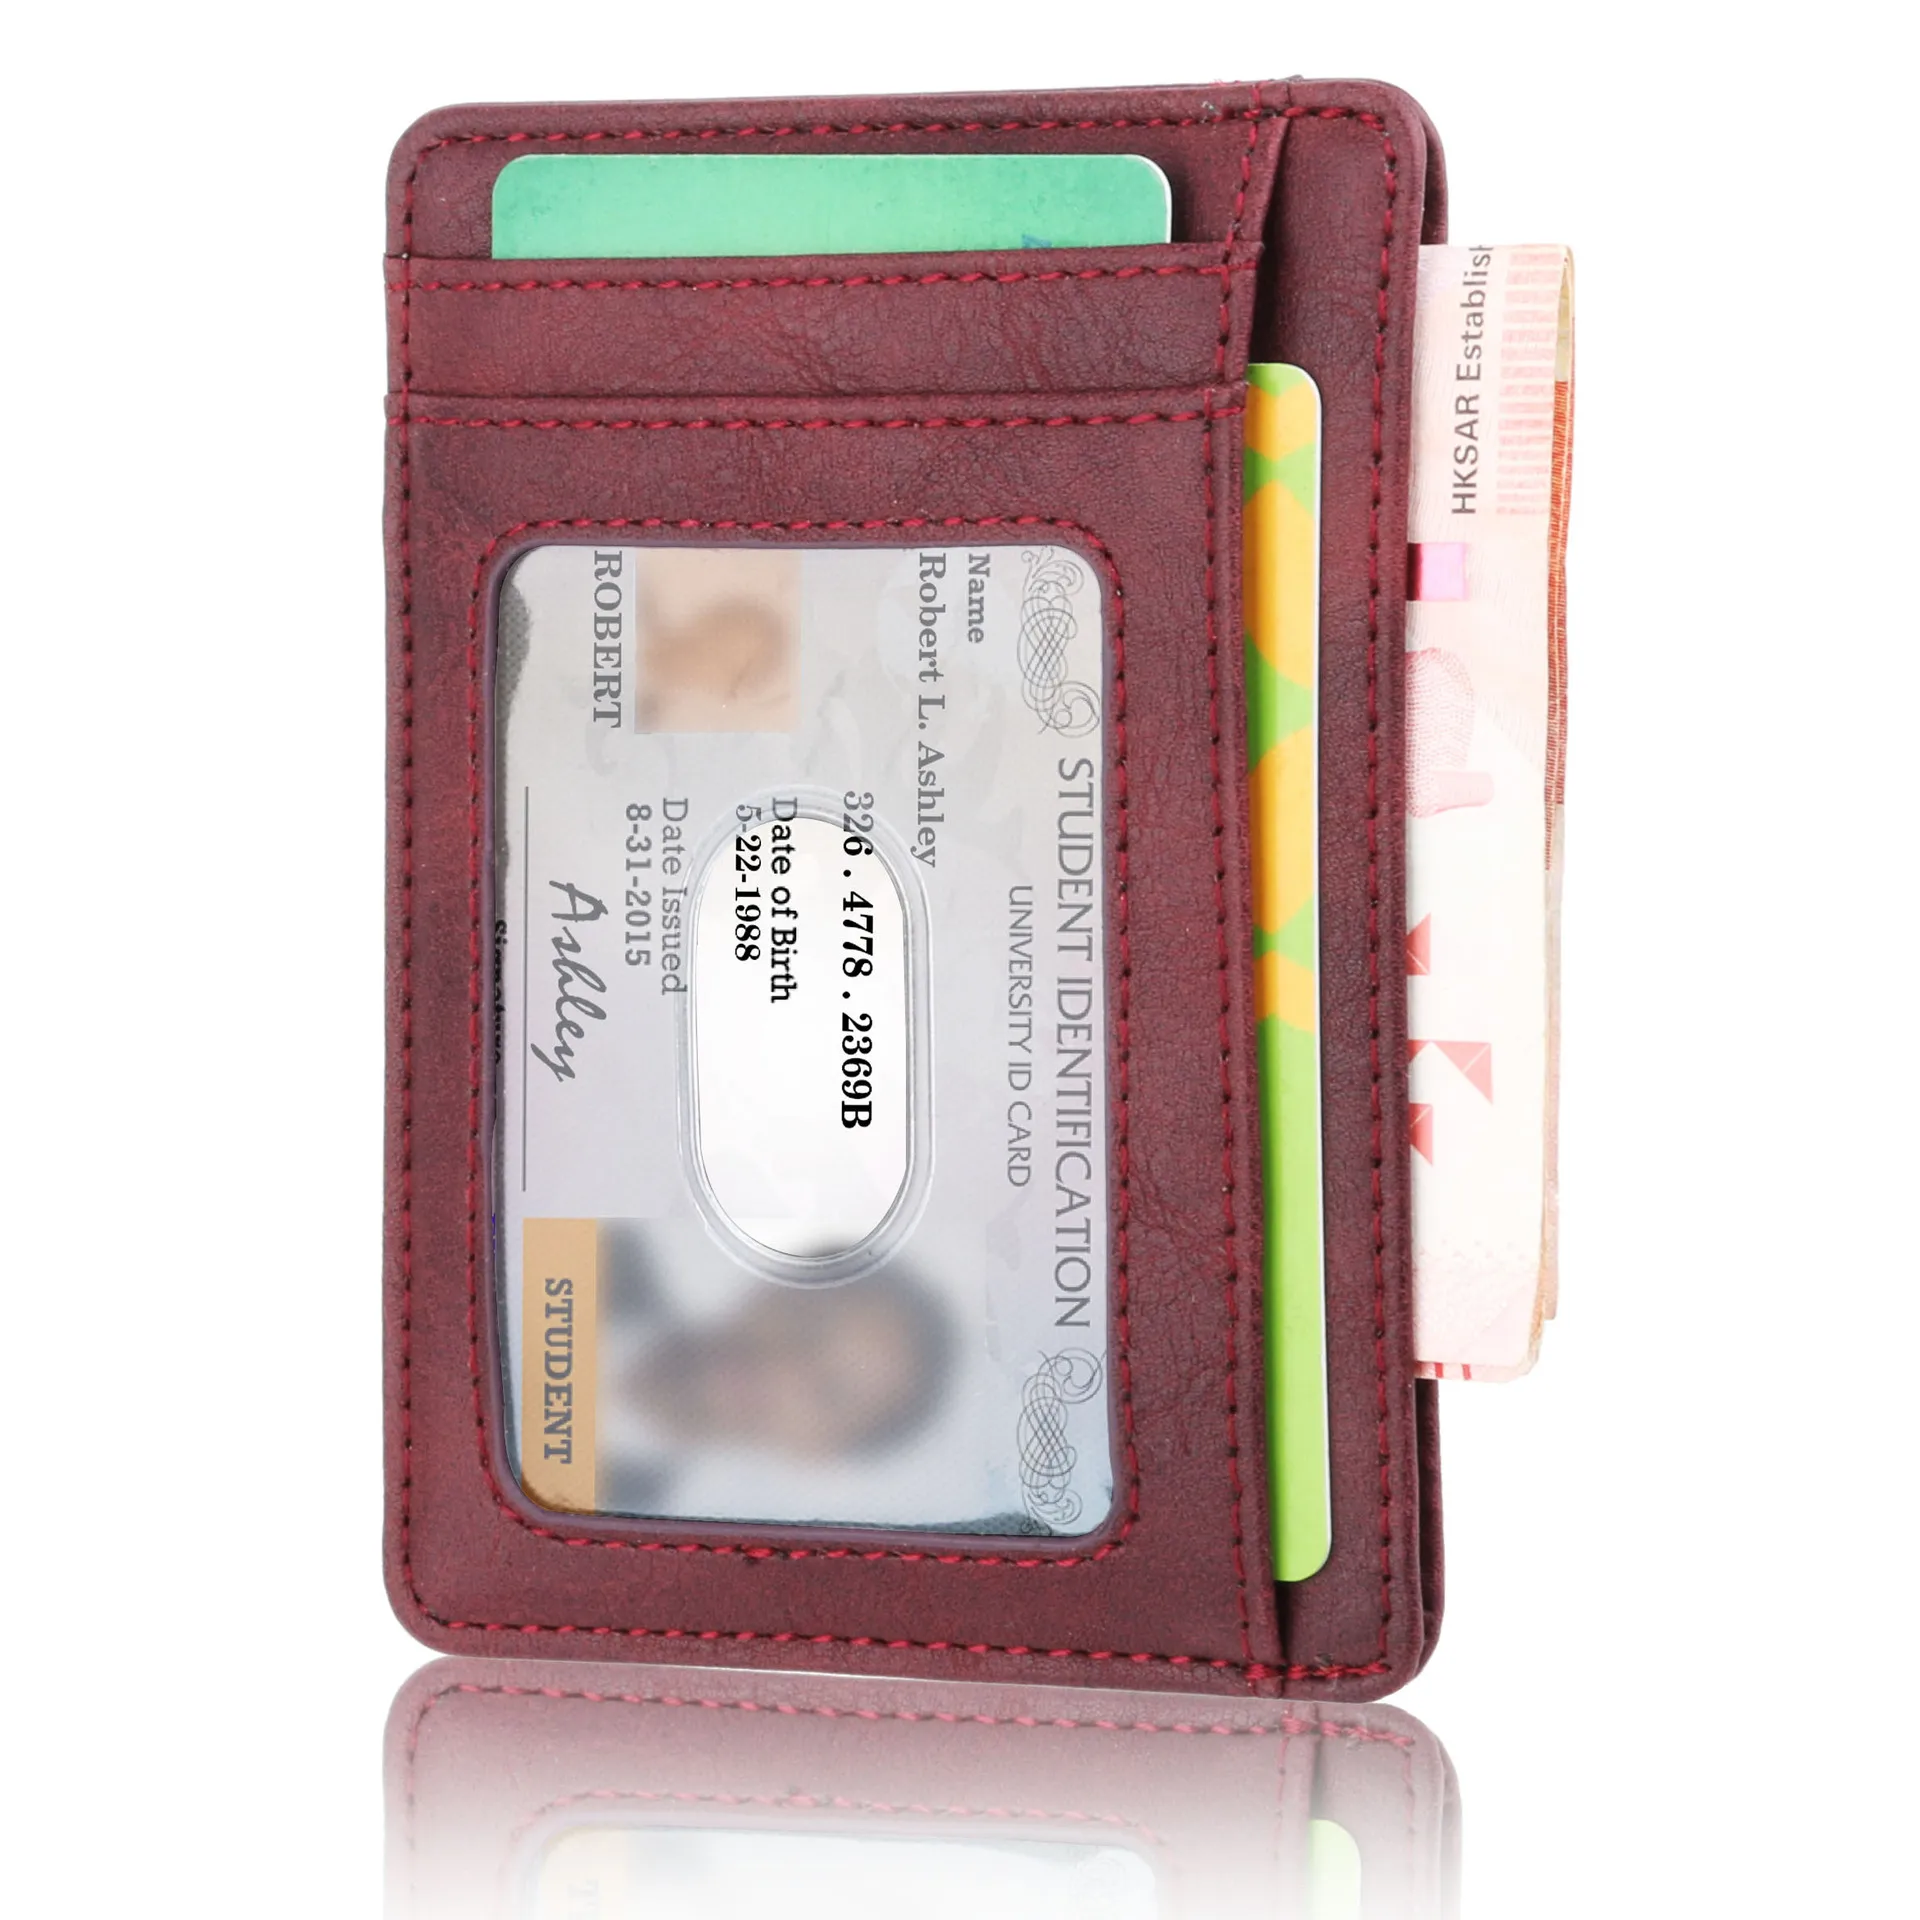 Анти-Магнитный набор карт тонкий кожаный кошелек кредитный ID держатель для Карт RFID автобус банковская карта защита тонкий кошелек чехол мульти-карта чехол